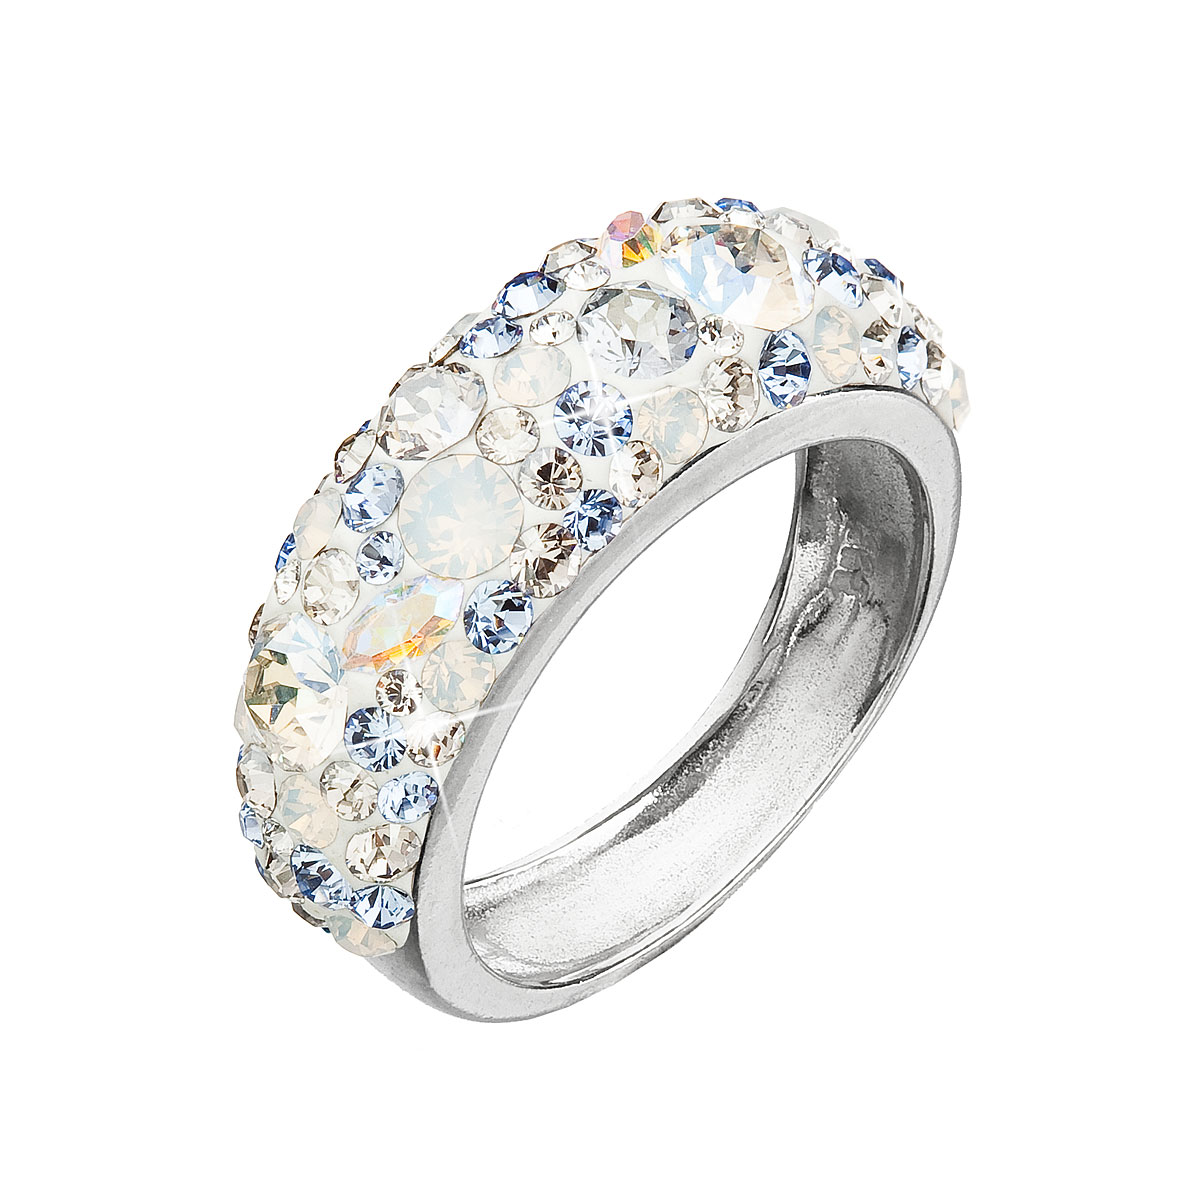 Evolution Group Stříbrný prsten s krystaly Swarovski modrý 35031.3 light sapphire